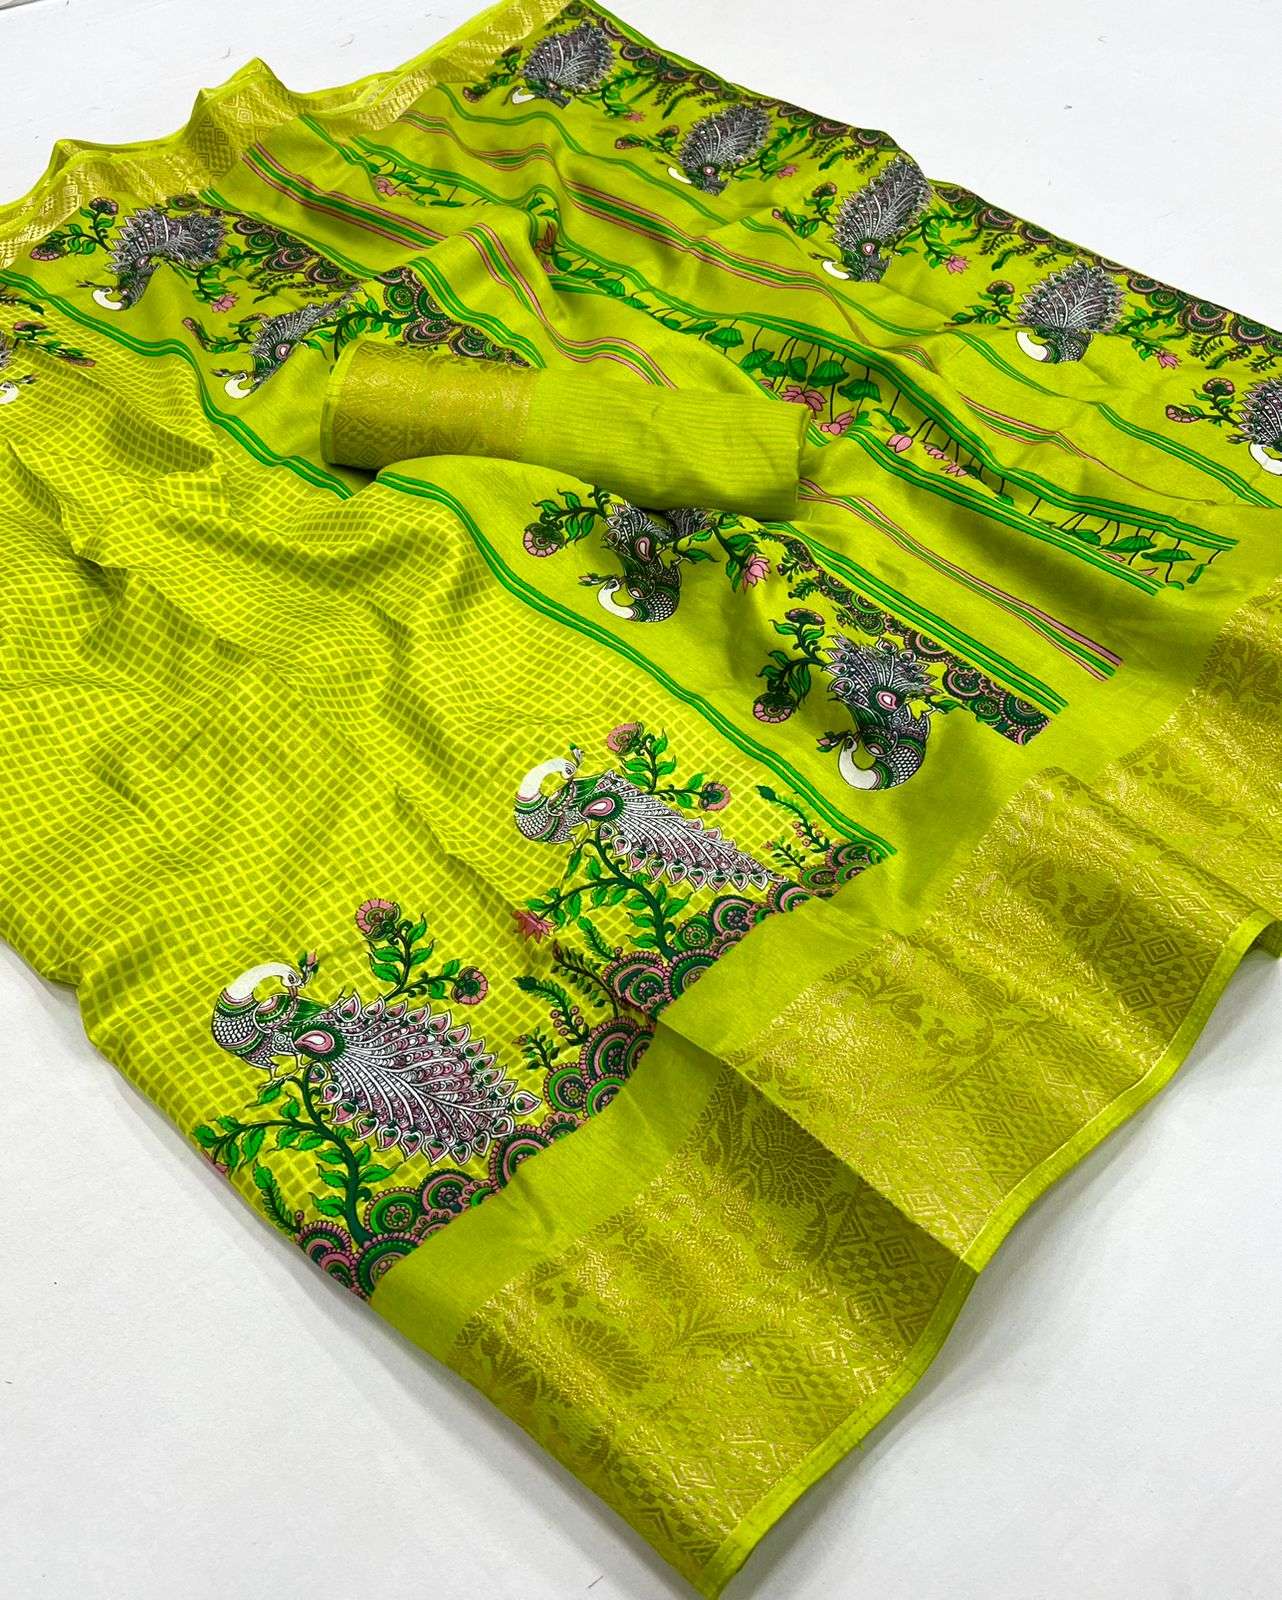 lt fabrics kashvi creation samiksha dola silk with printed s...